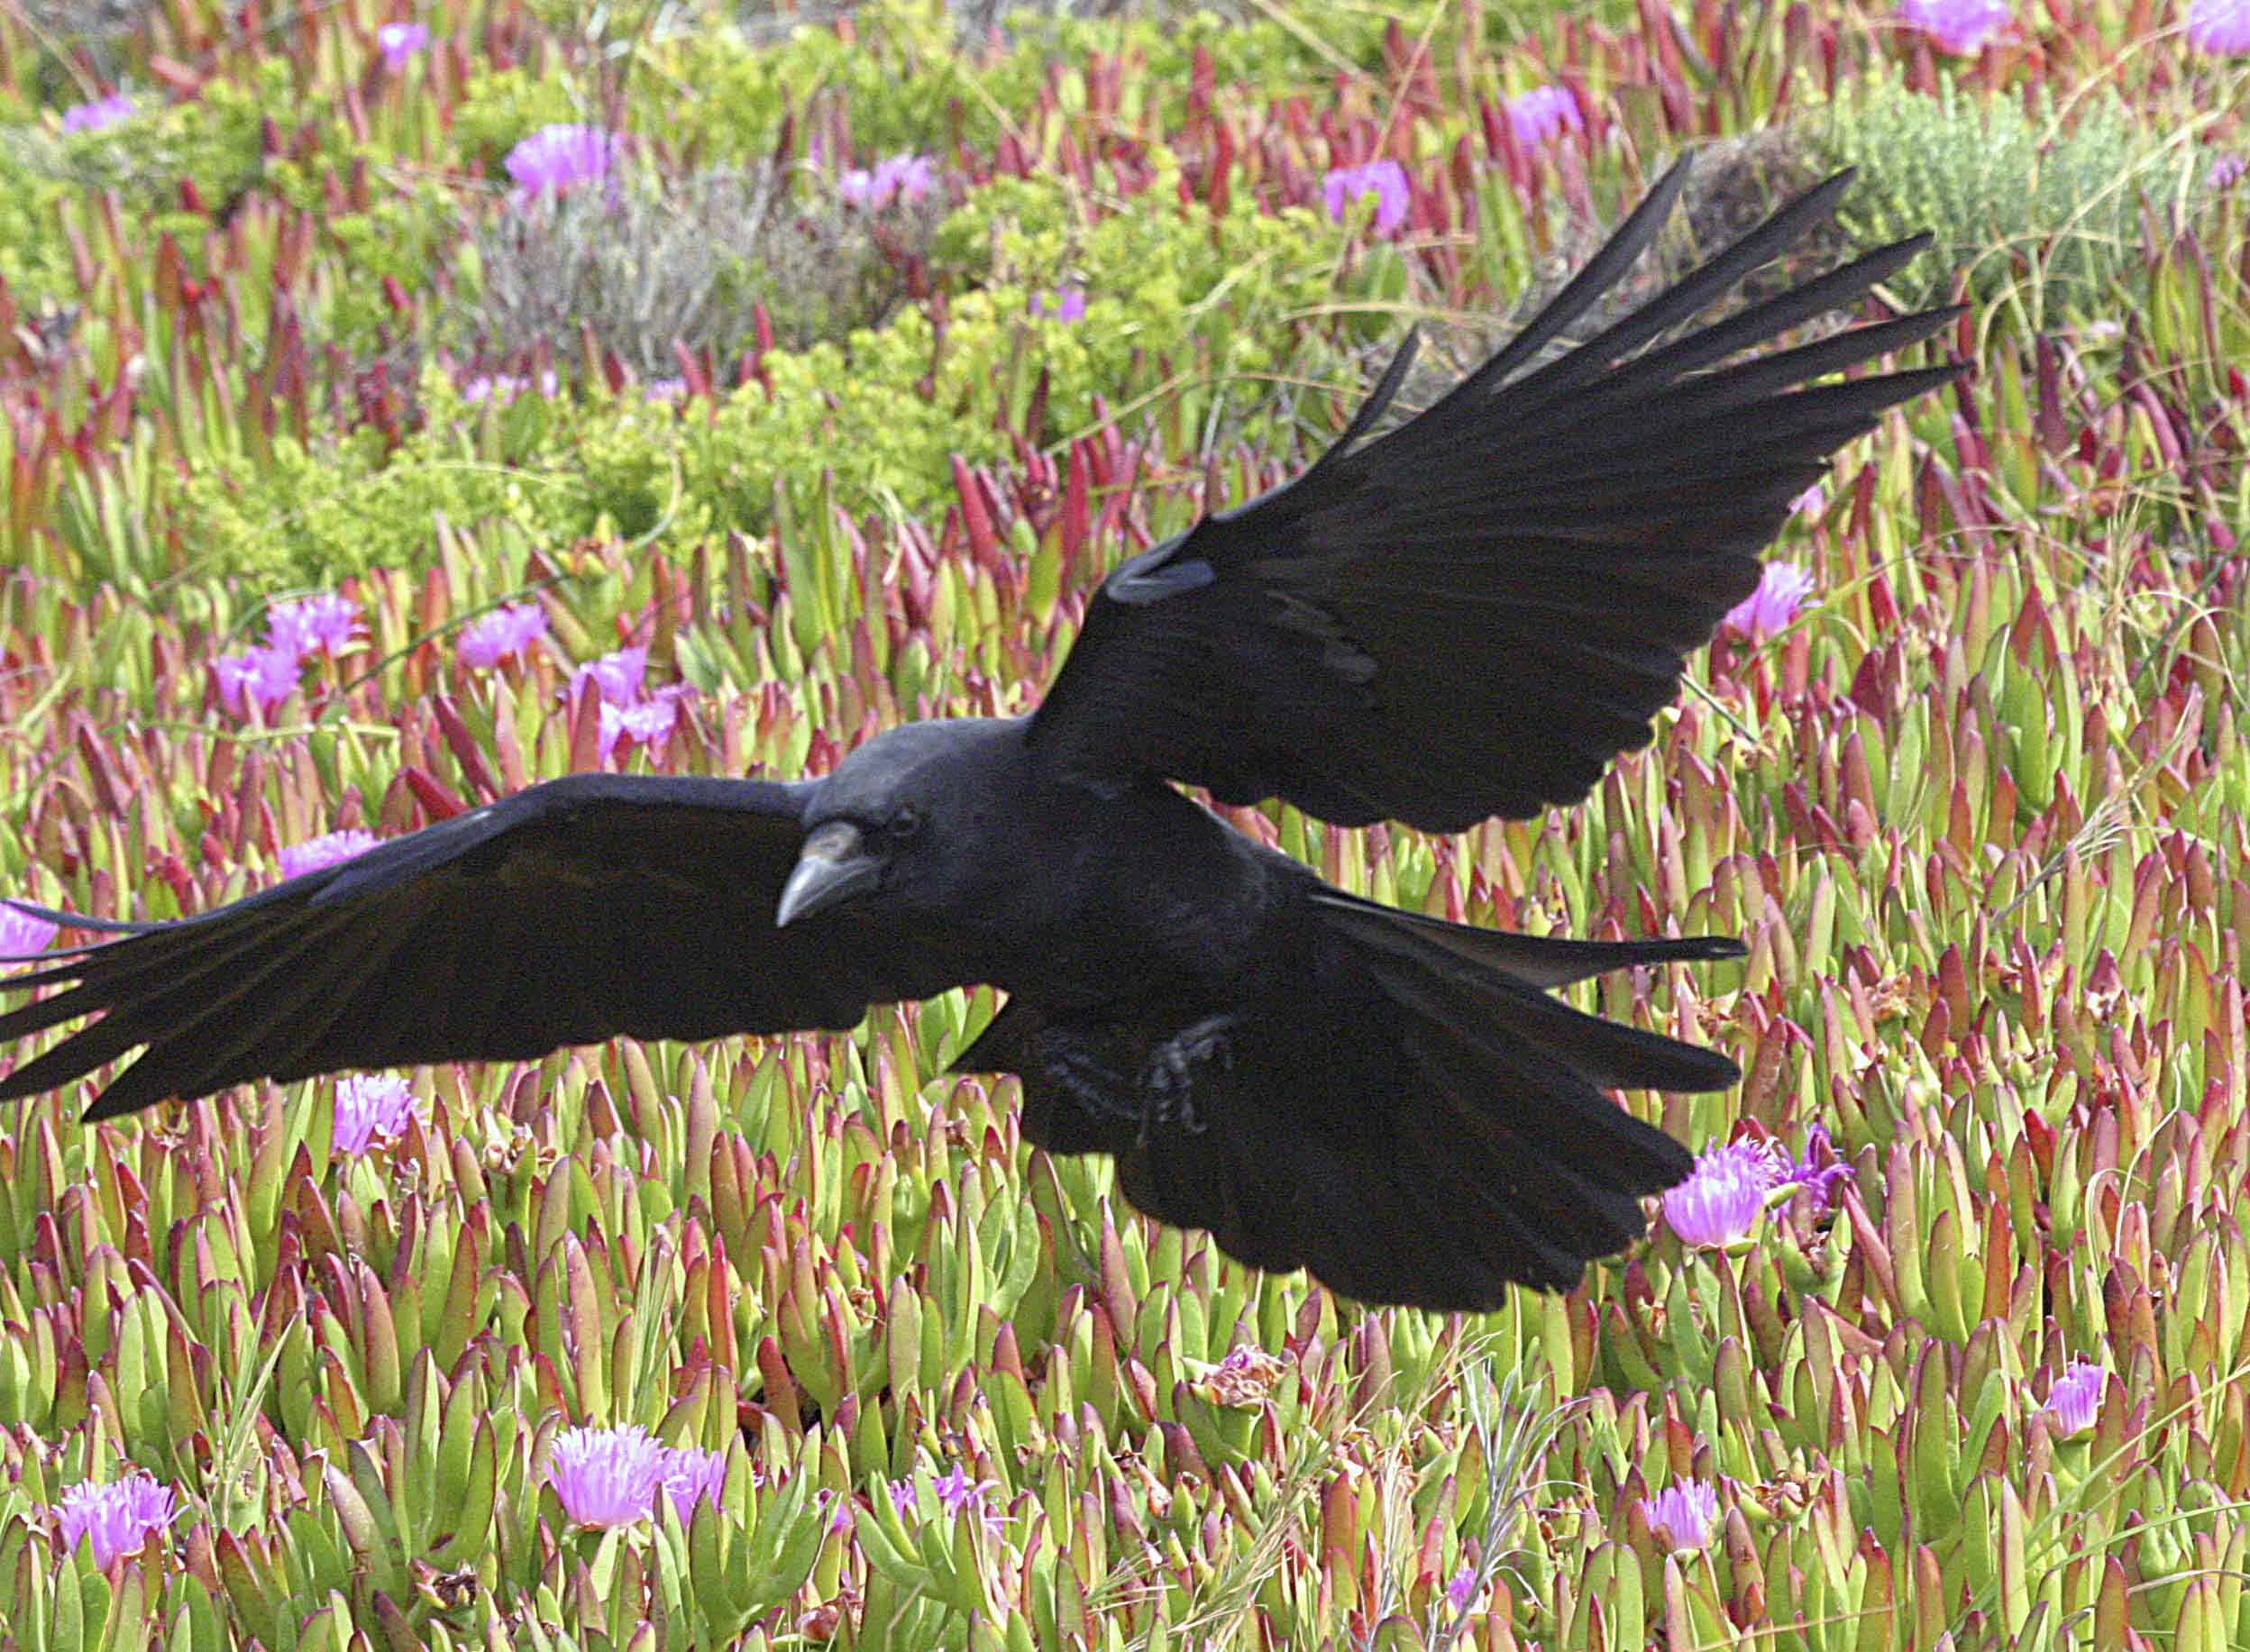 Птица с черными кончиками крыльев